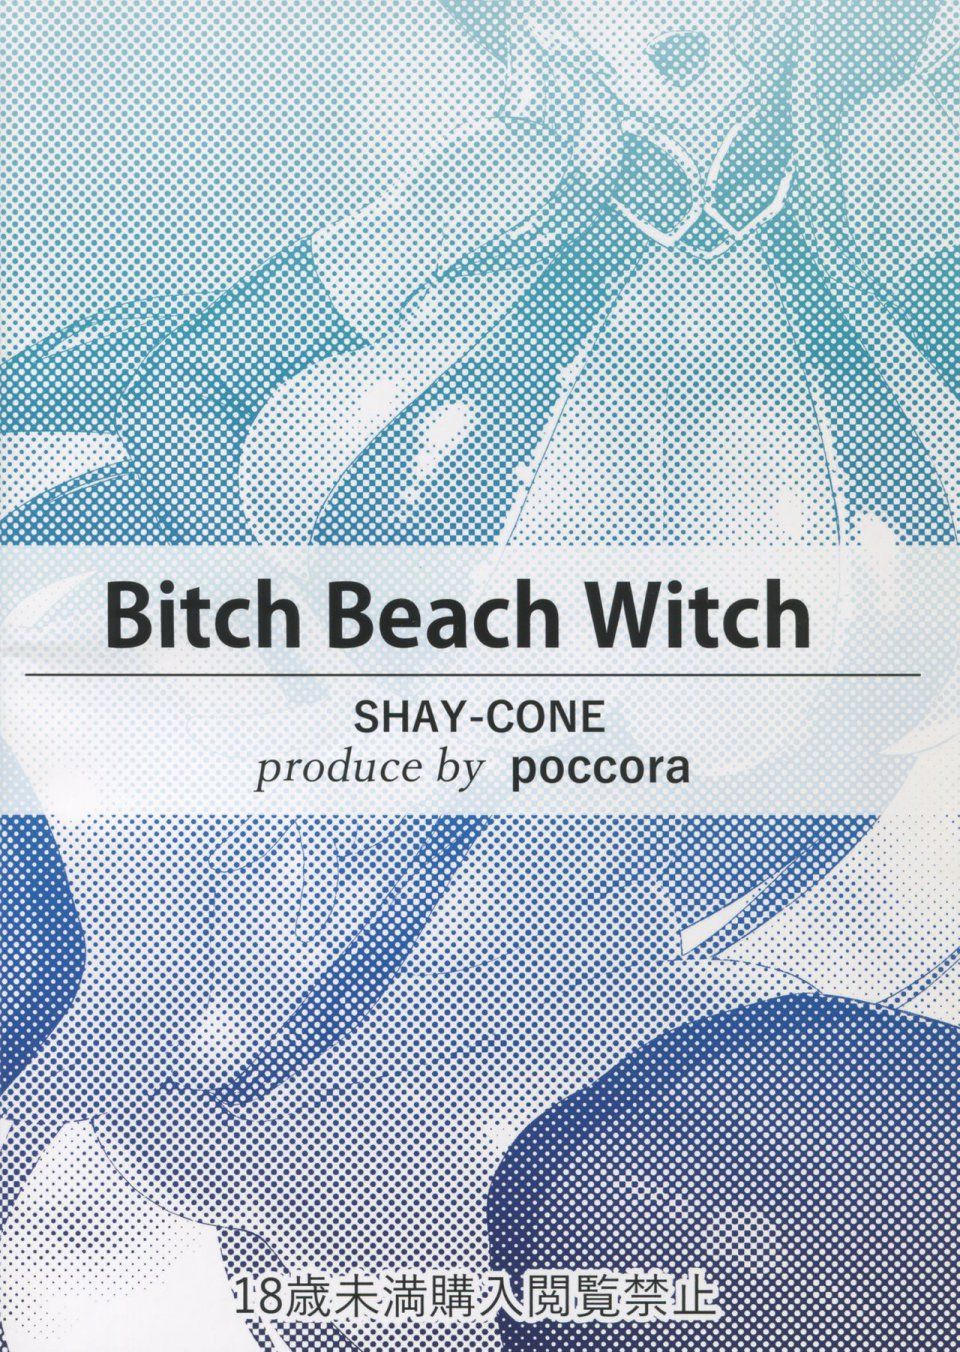 Poccora - Bitch Beach Witch - Photo #2